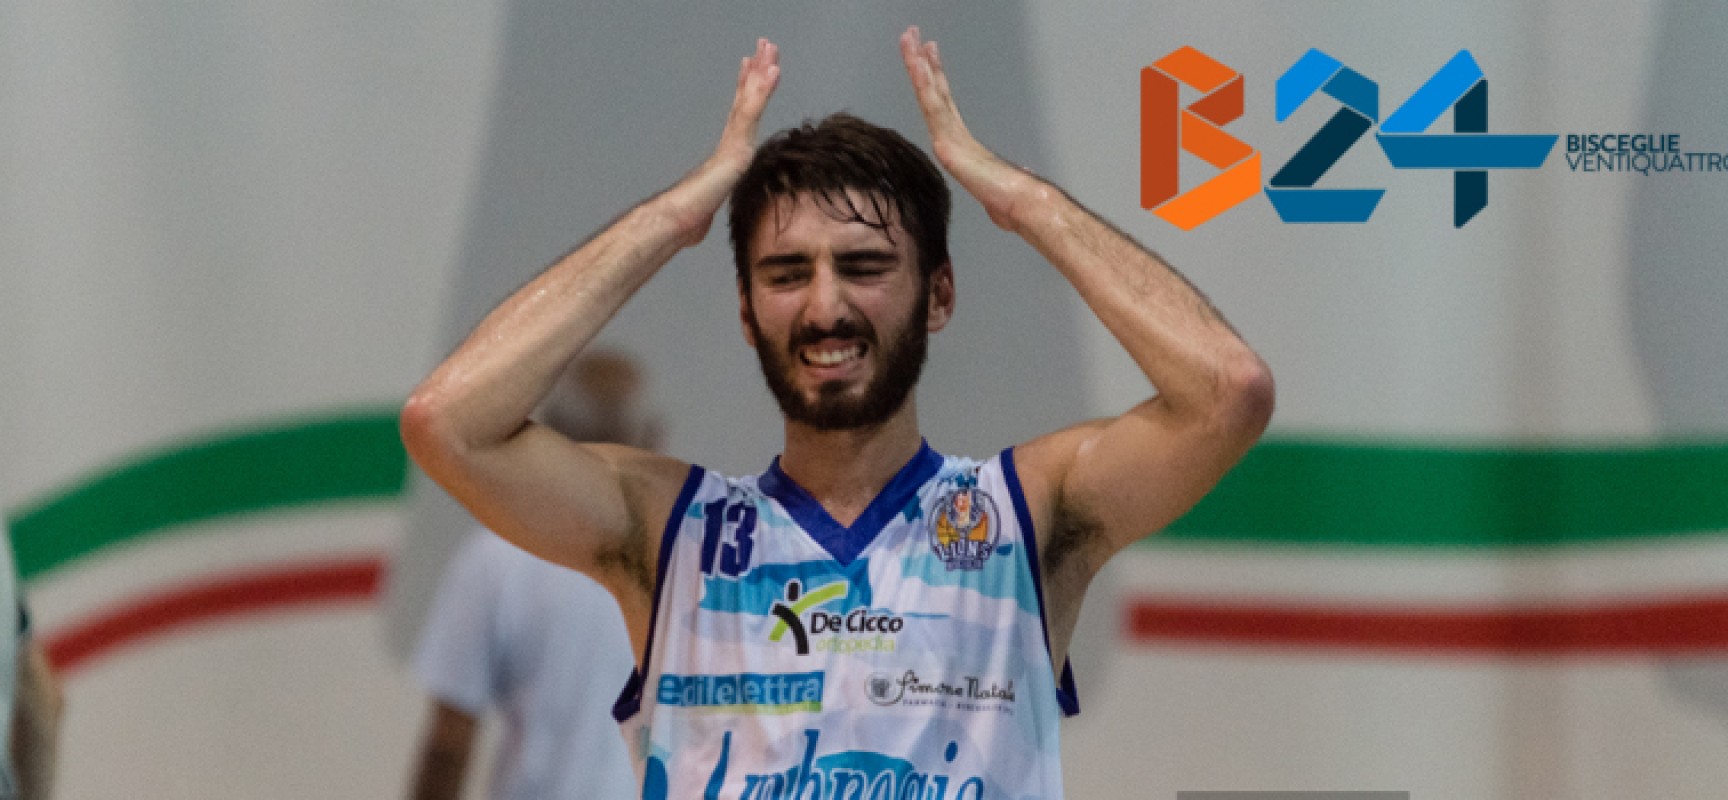 Lions Basket sconfitti all’overtime da Pescara, nerazzurri raggiunti al secondo posto